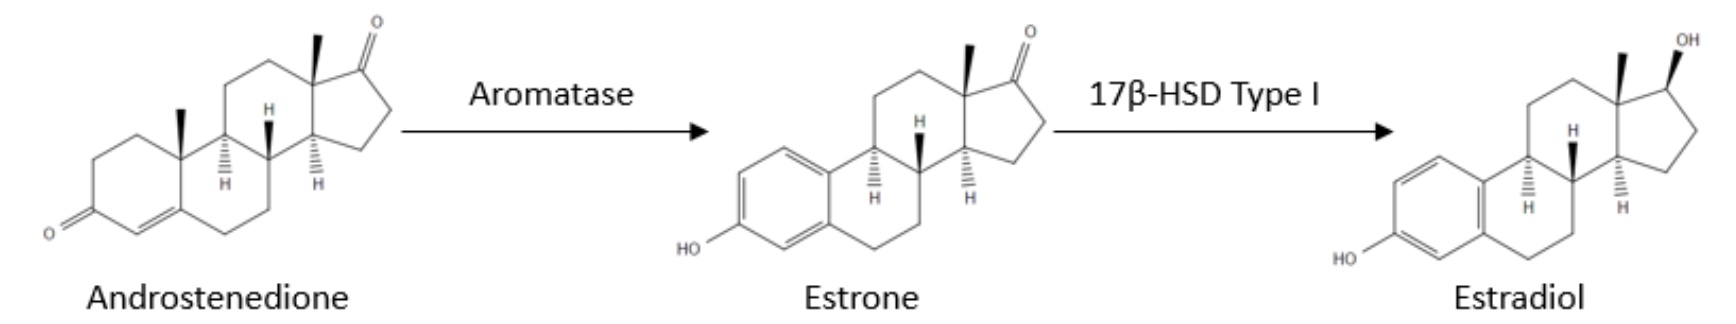 Aromatase reaction pathway